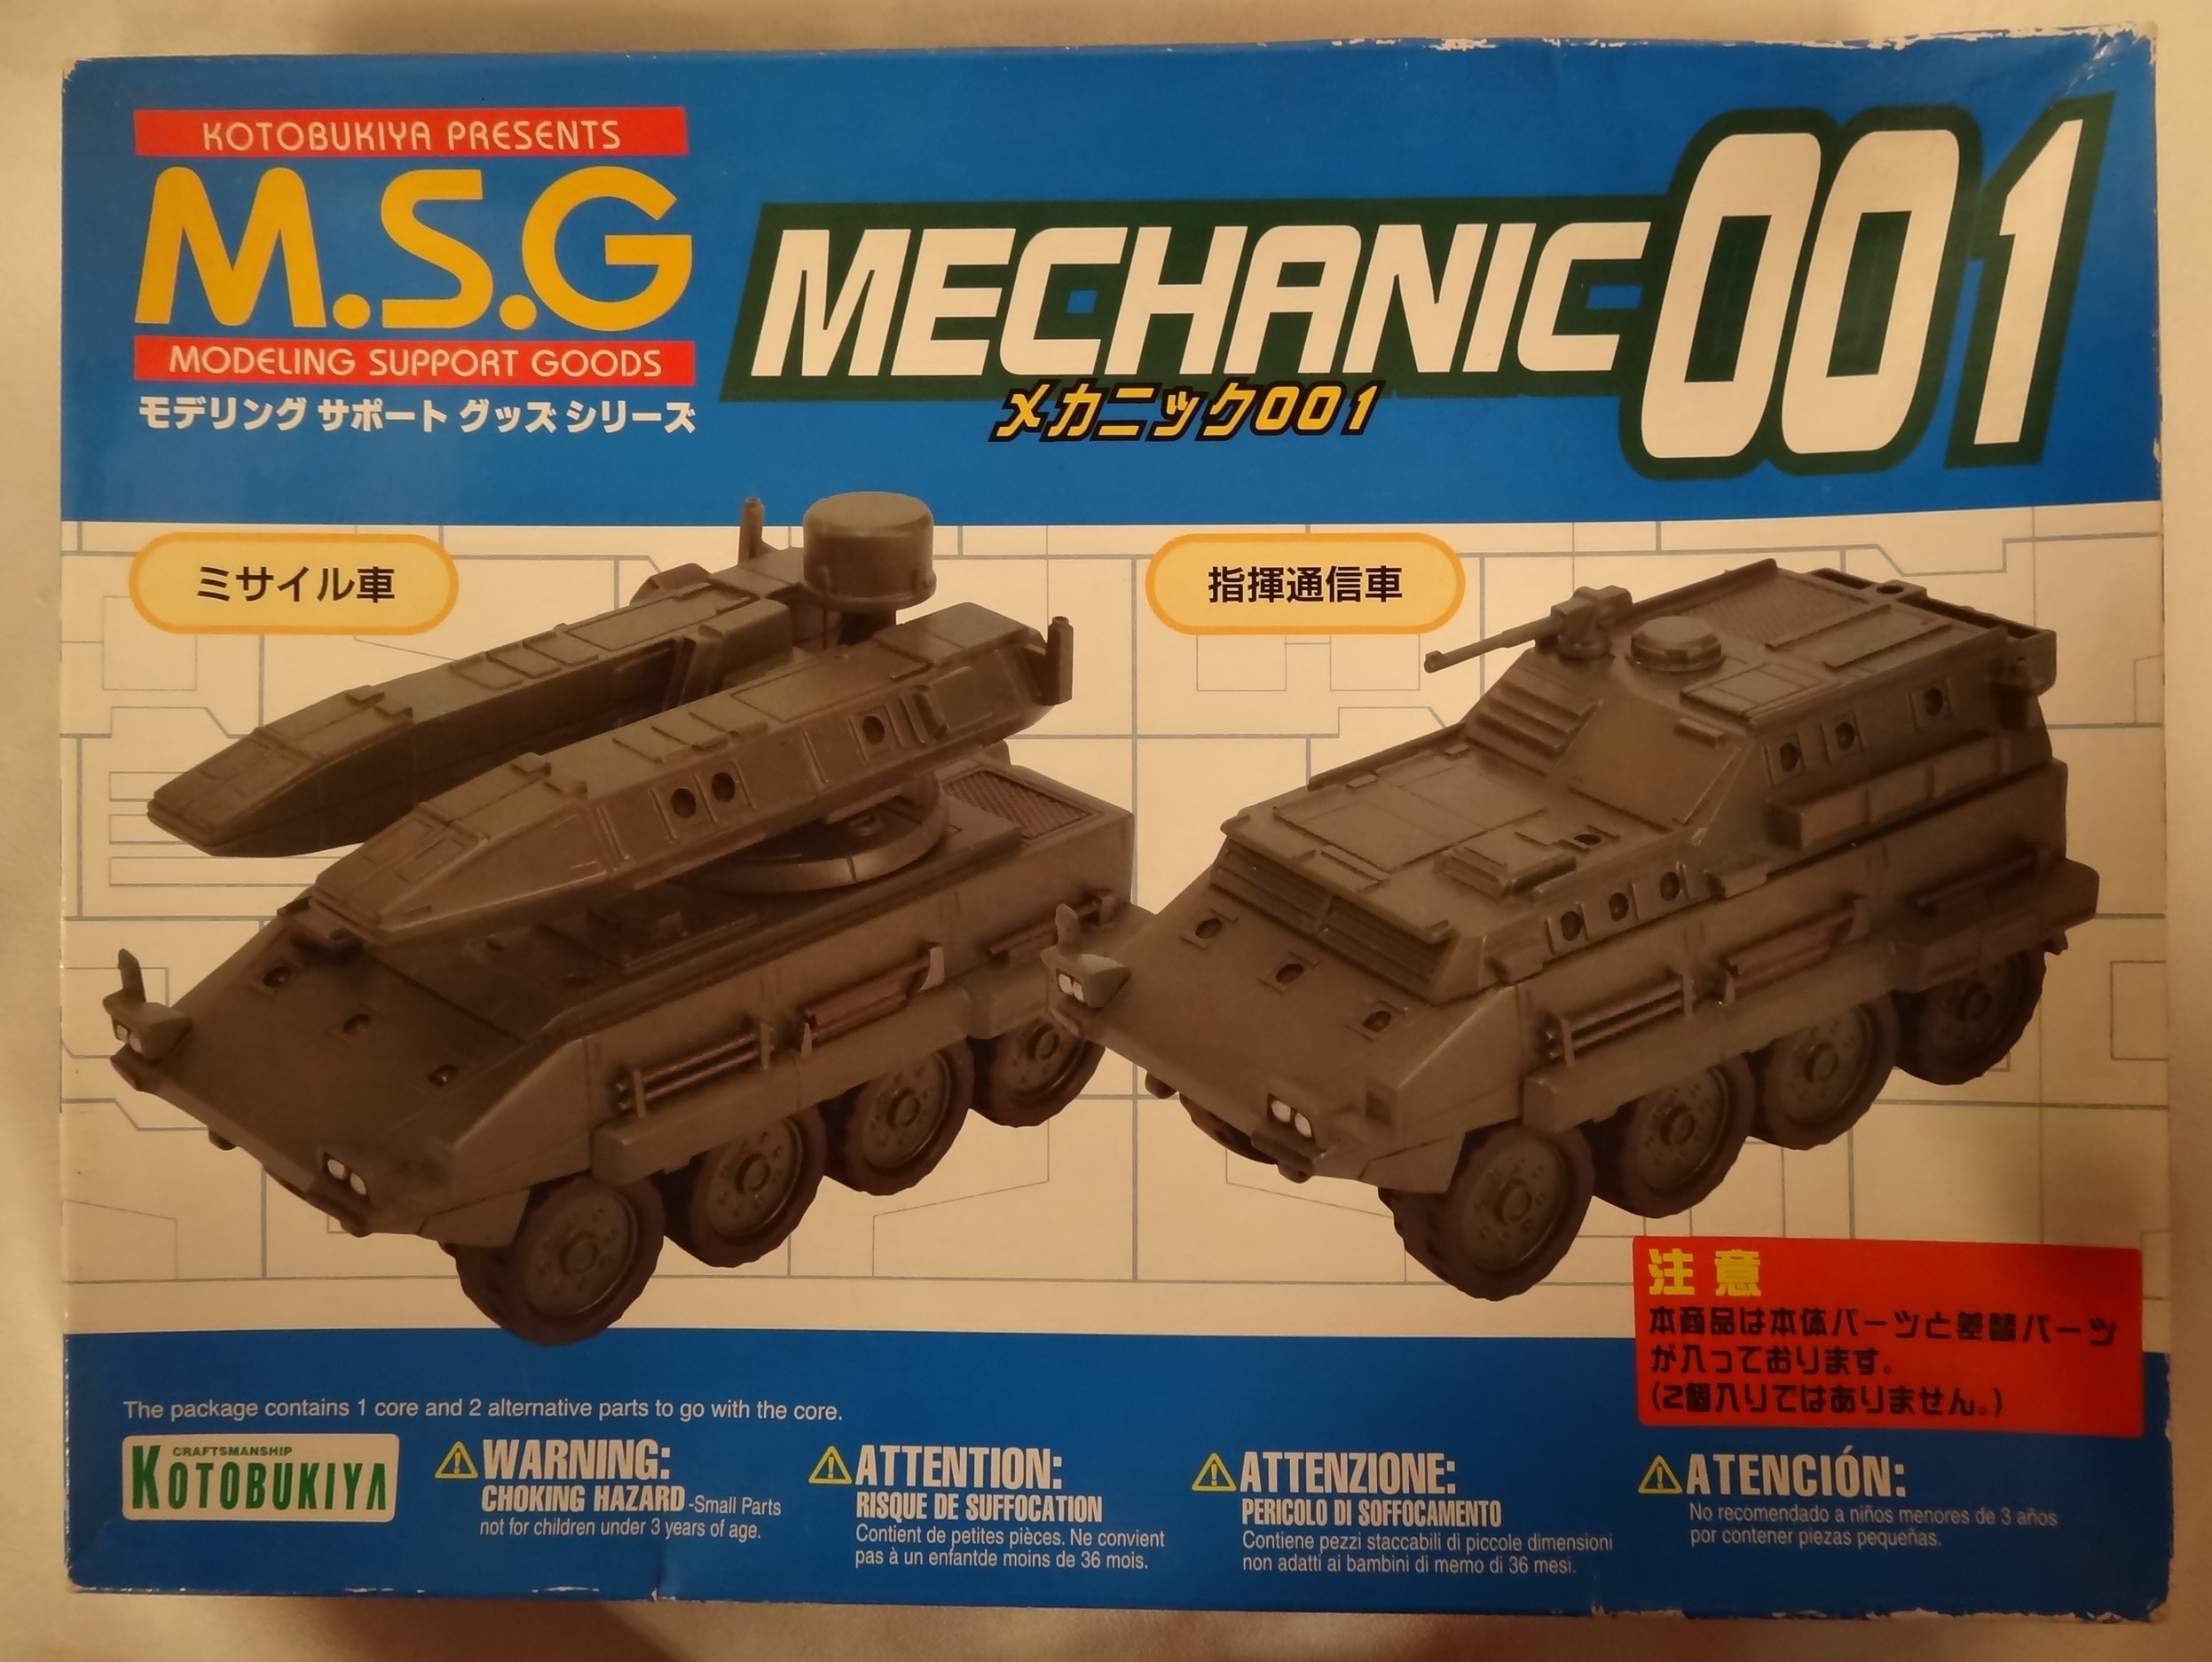 コトブキヤ M.S.G. MECHANIC001 ミサイル車/指揮通信車-